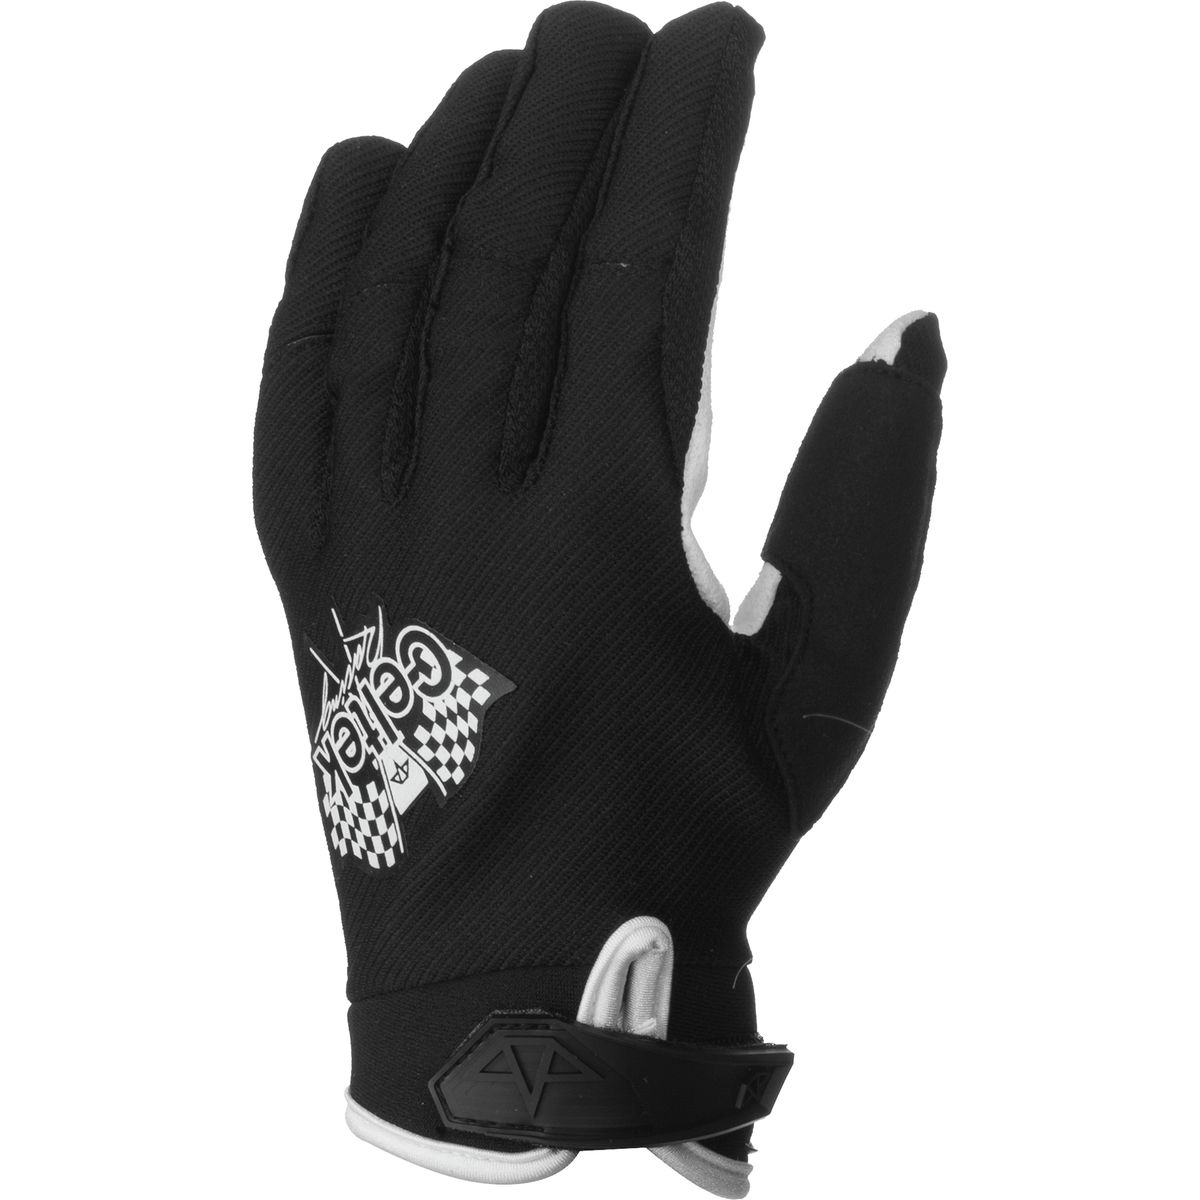 Celtek Glamis Gloves Men's